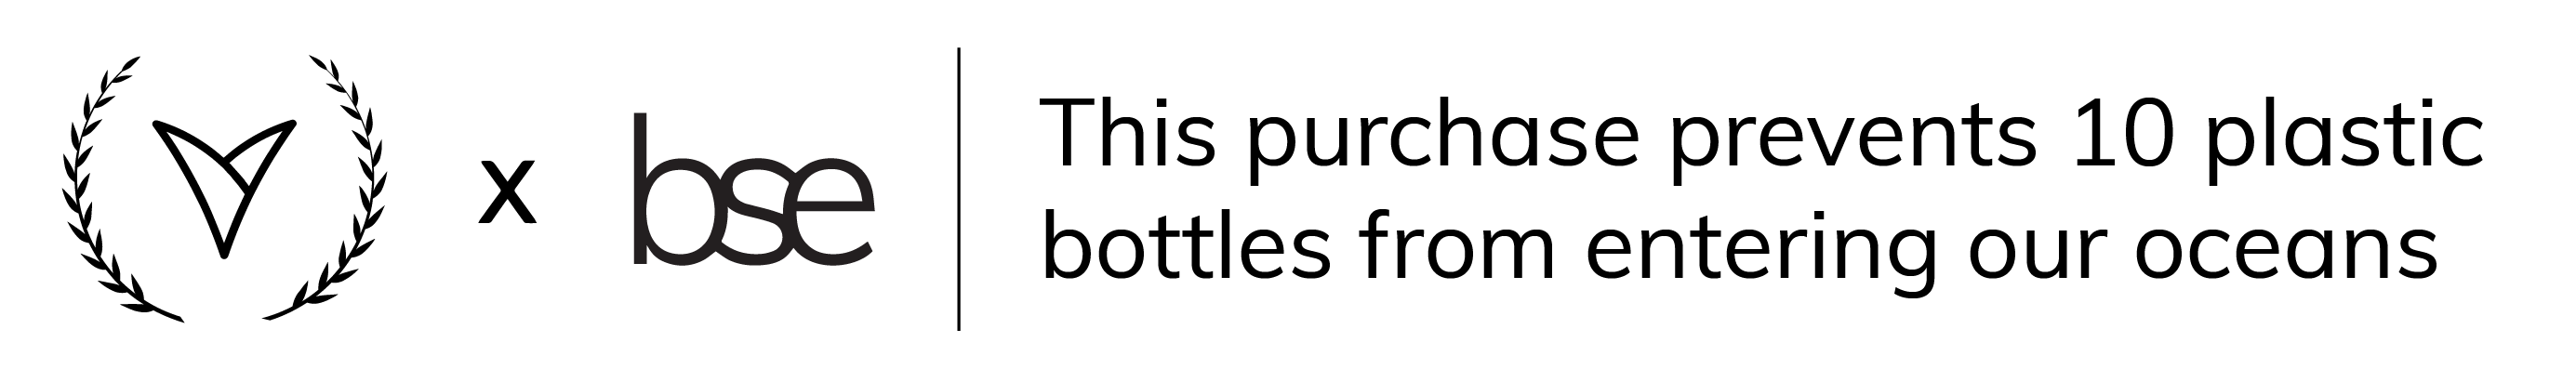 prevents 10 plastic bottles from entering our oceans logo